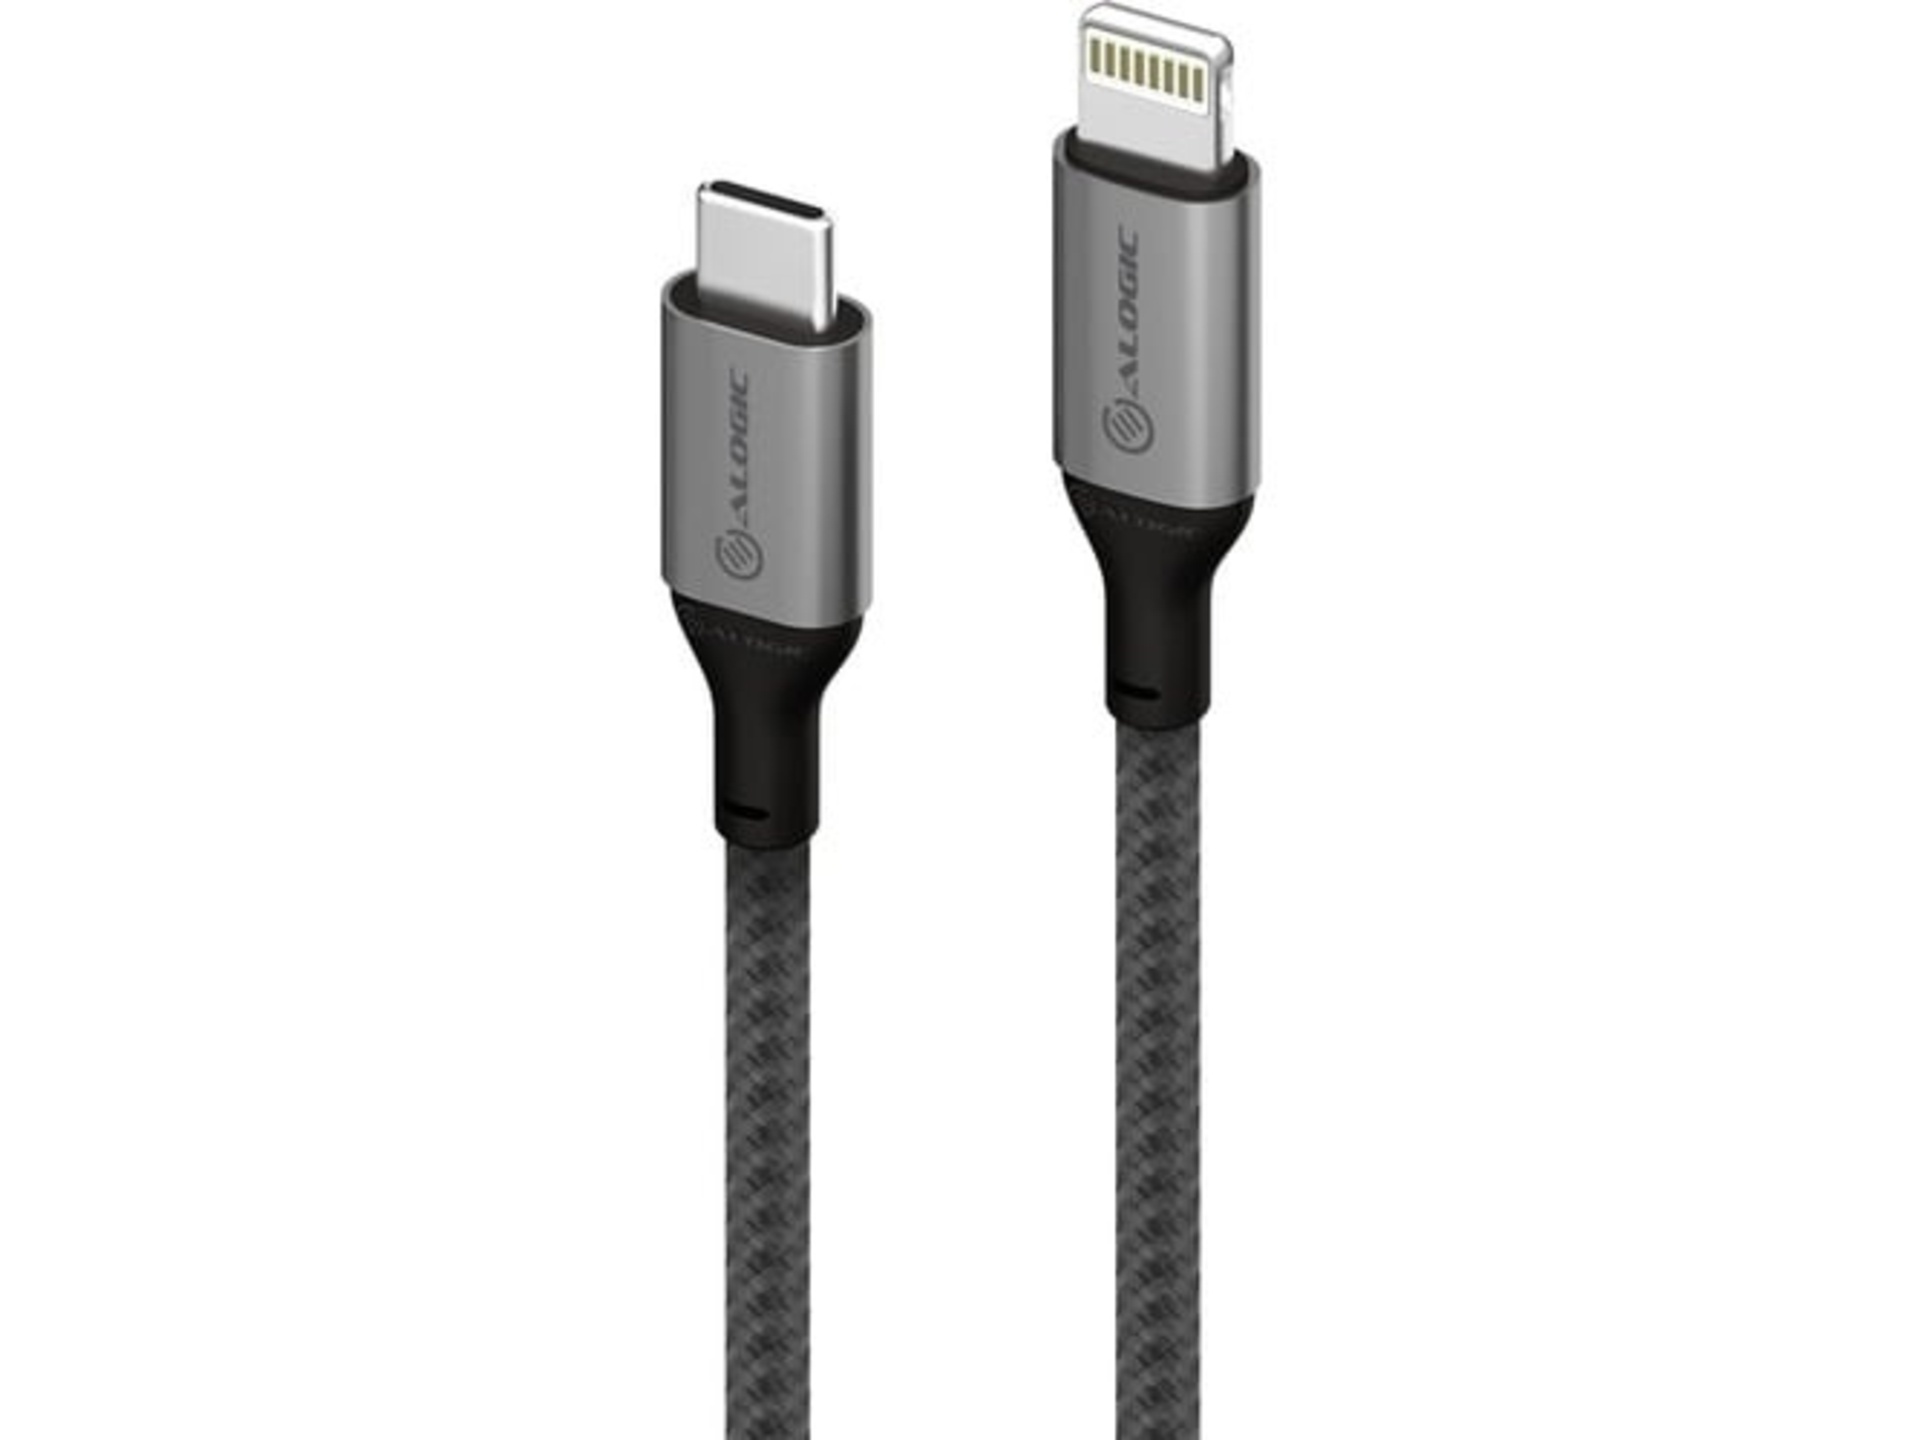 Alogic USB-C to Lightning Cable (1.5m)